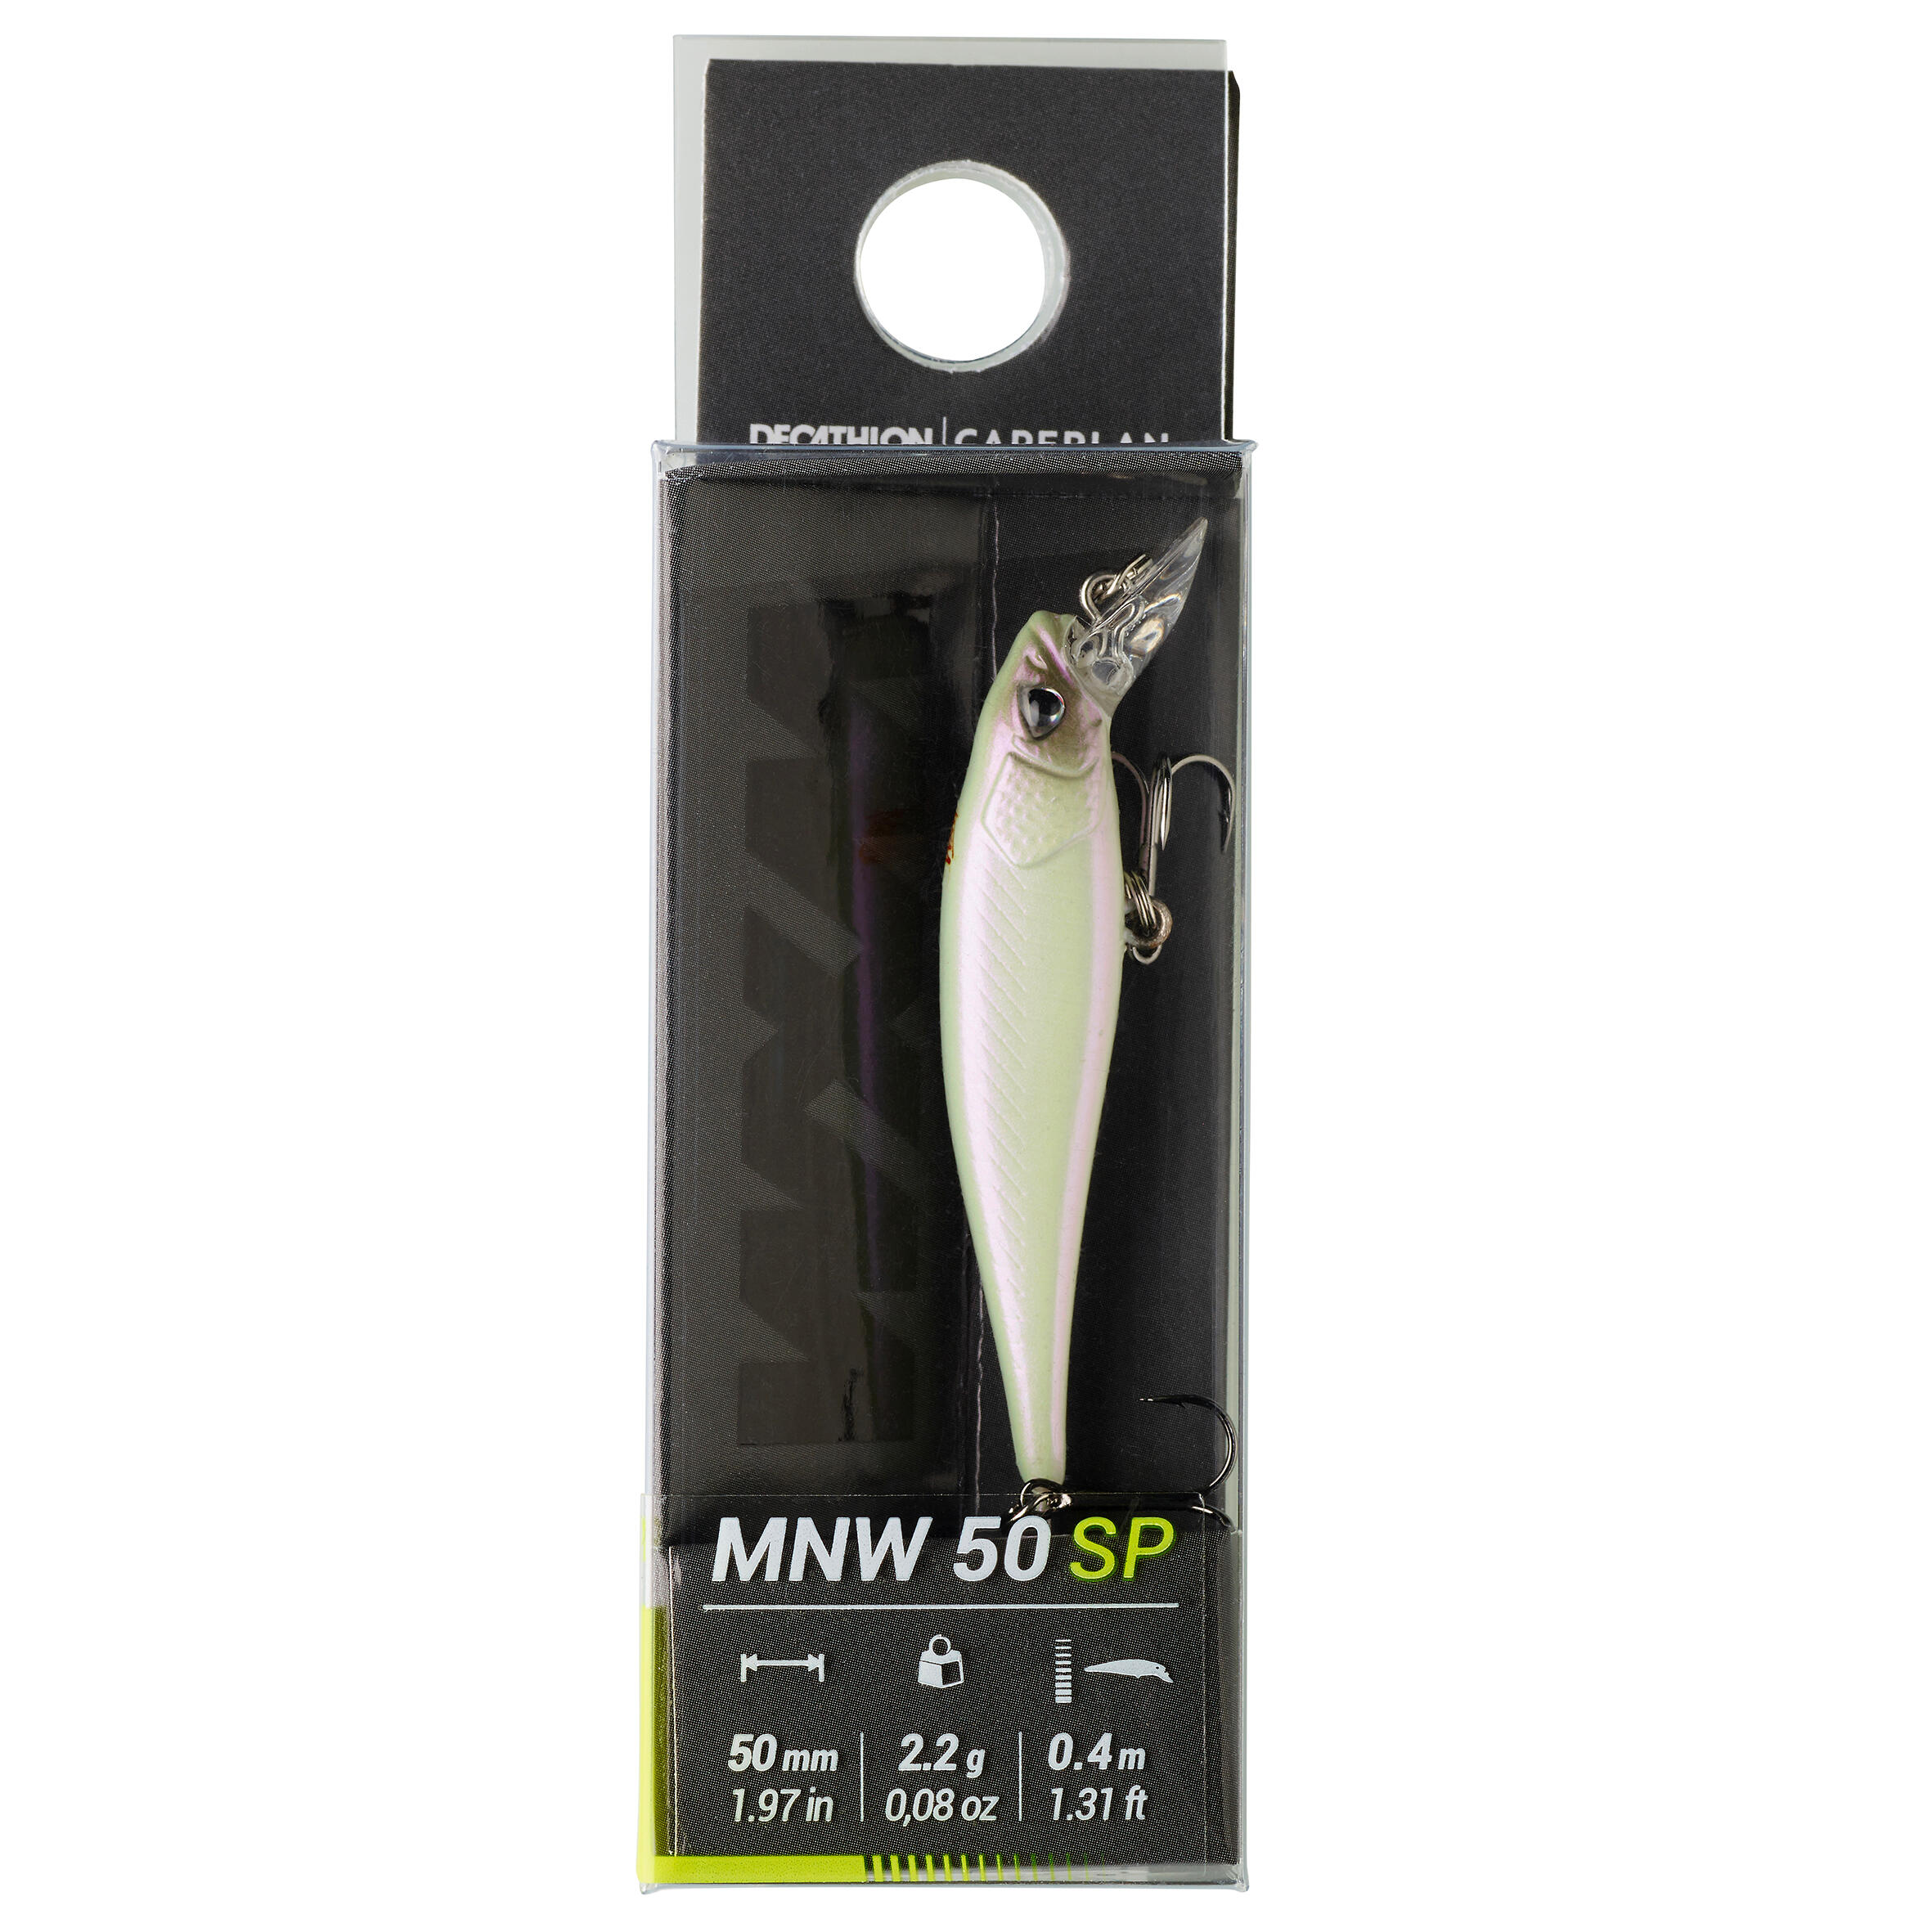 WXM MNW 50 SP fishing jerkbait - White - Caperlan - Decathlon